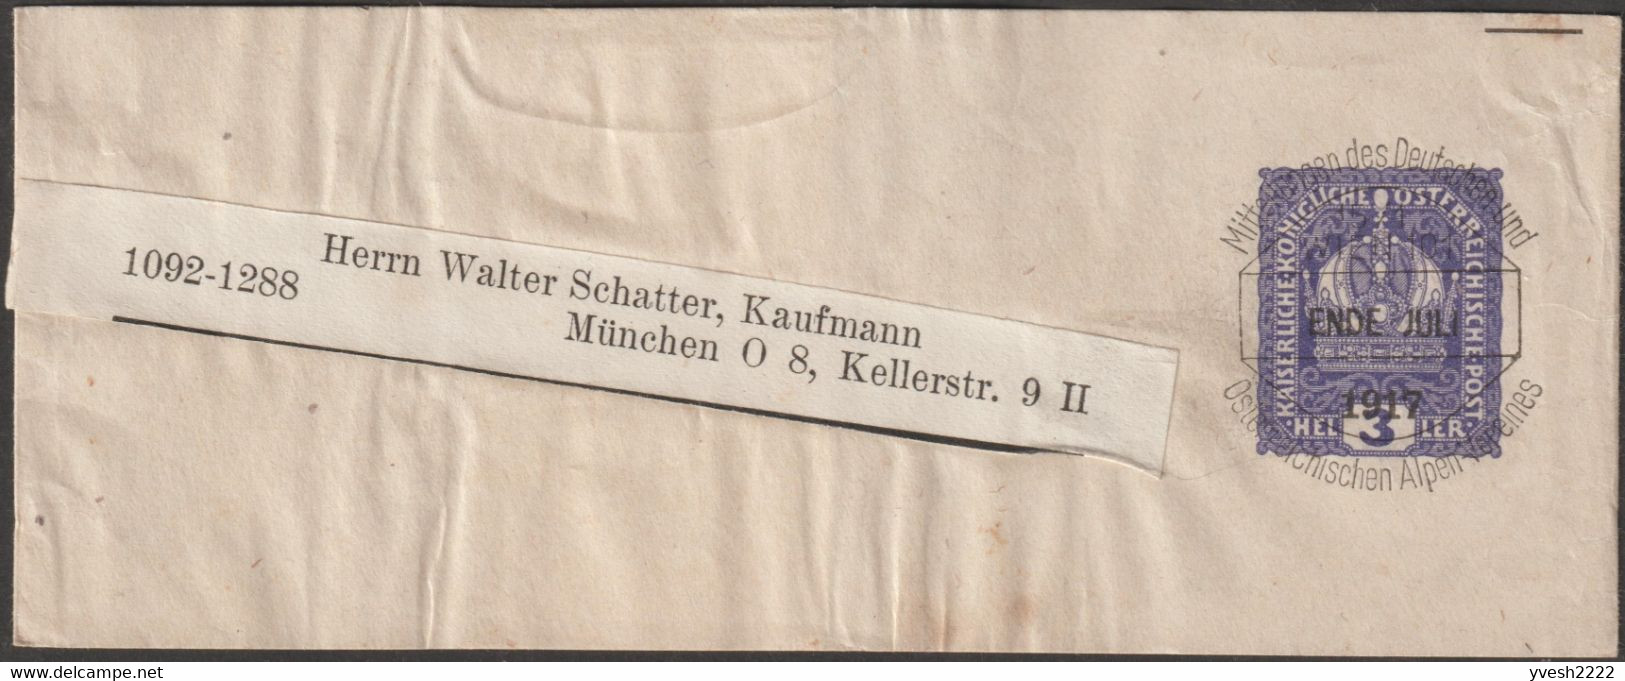 Autriche 1898 à 1920. 16 bandes-journal timbrées sur commande & préoblitérées. Association alpestre germano-autrichienne